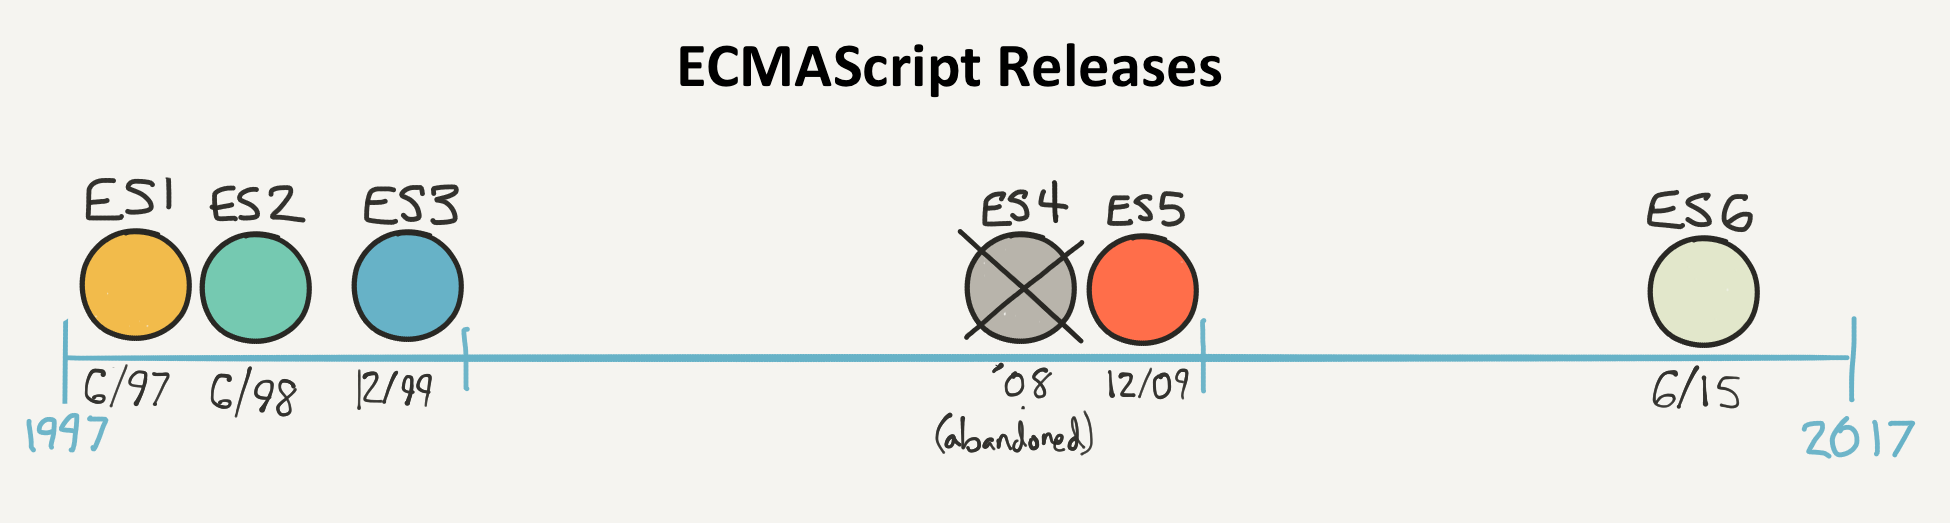 ECMAScript releases